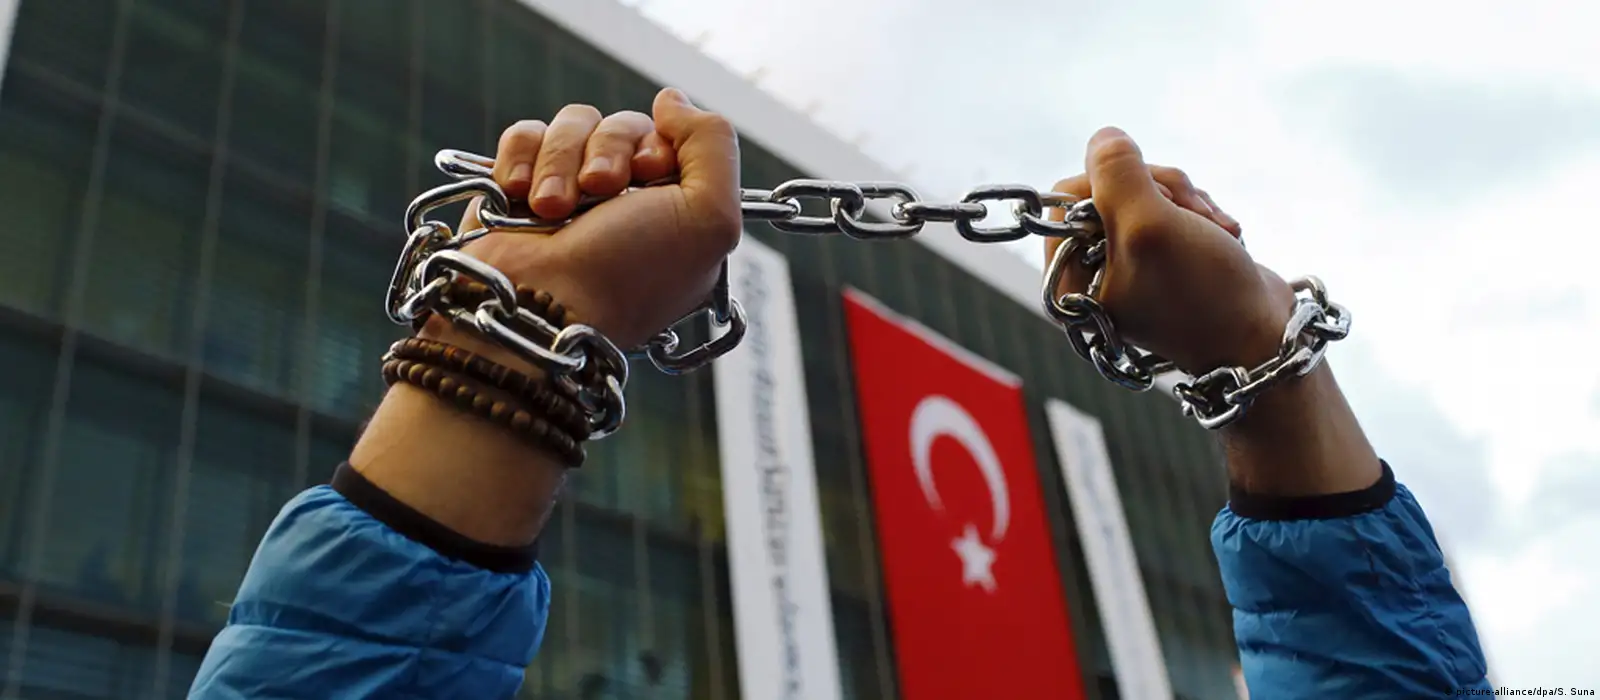 Turkey shuts down influential pro-Kurdish newspaper – DW – 08/16/2016